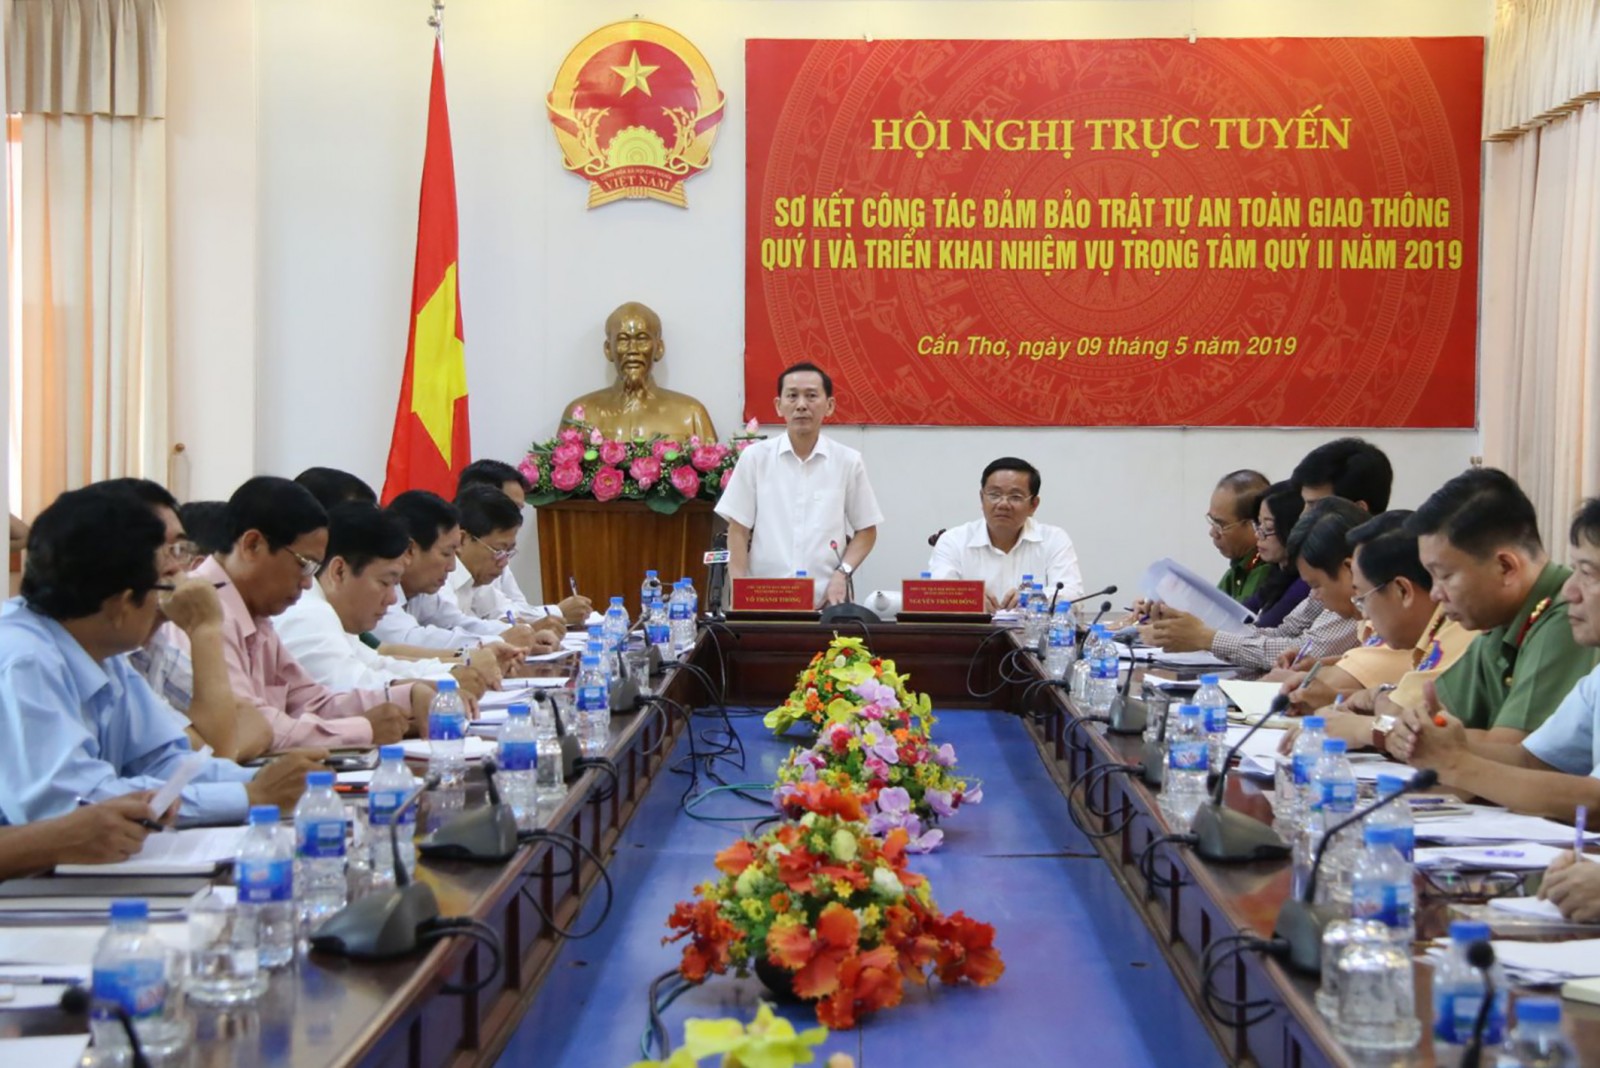 Ông Võ Thành Thống, Chủ tịch UBND TP Cần Thơ, phát biểu chỉ đạo tại hội nghị. Ảnh: CHẤN HƯNG